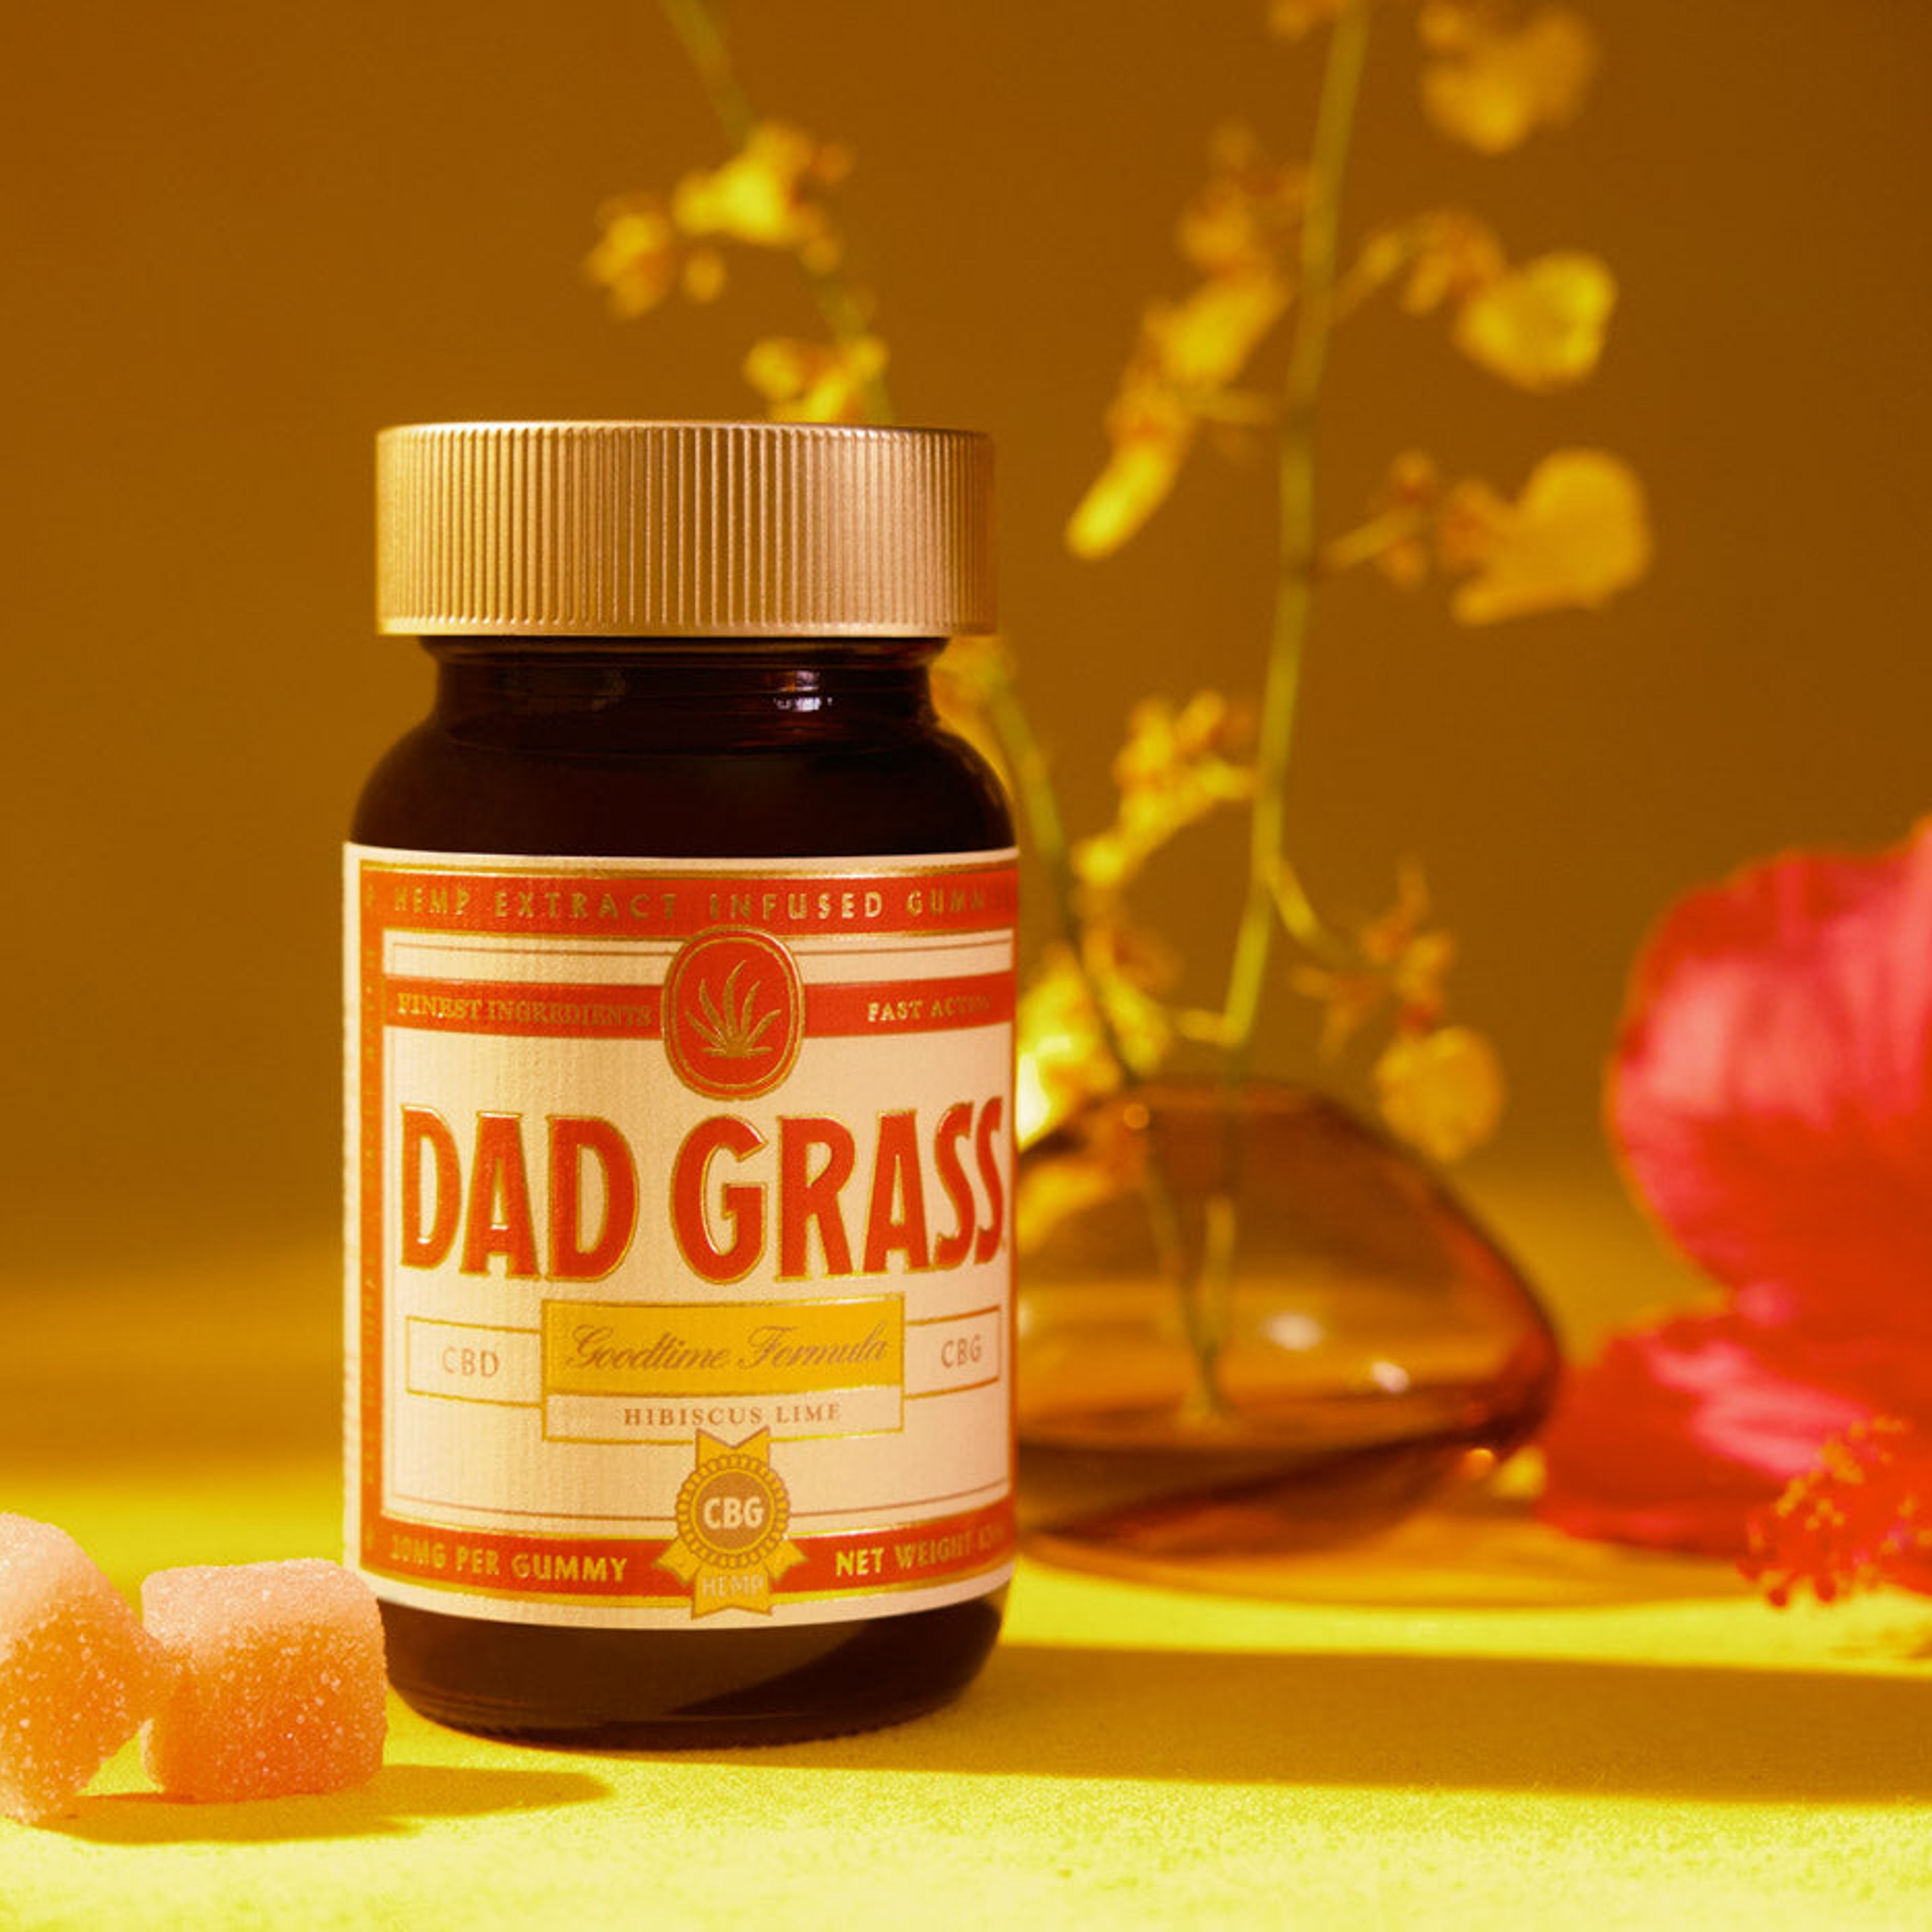 Dad Grass Goodtime Formula CBD + CBG Gummies